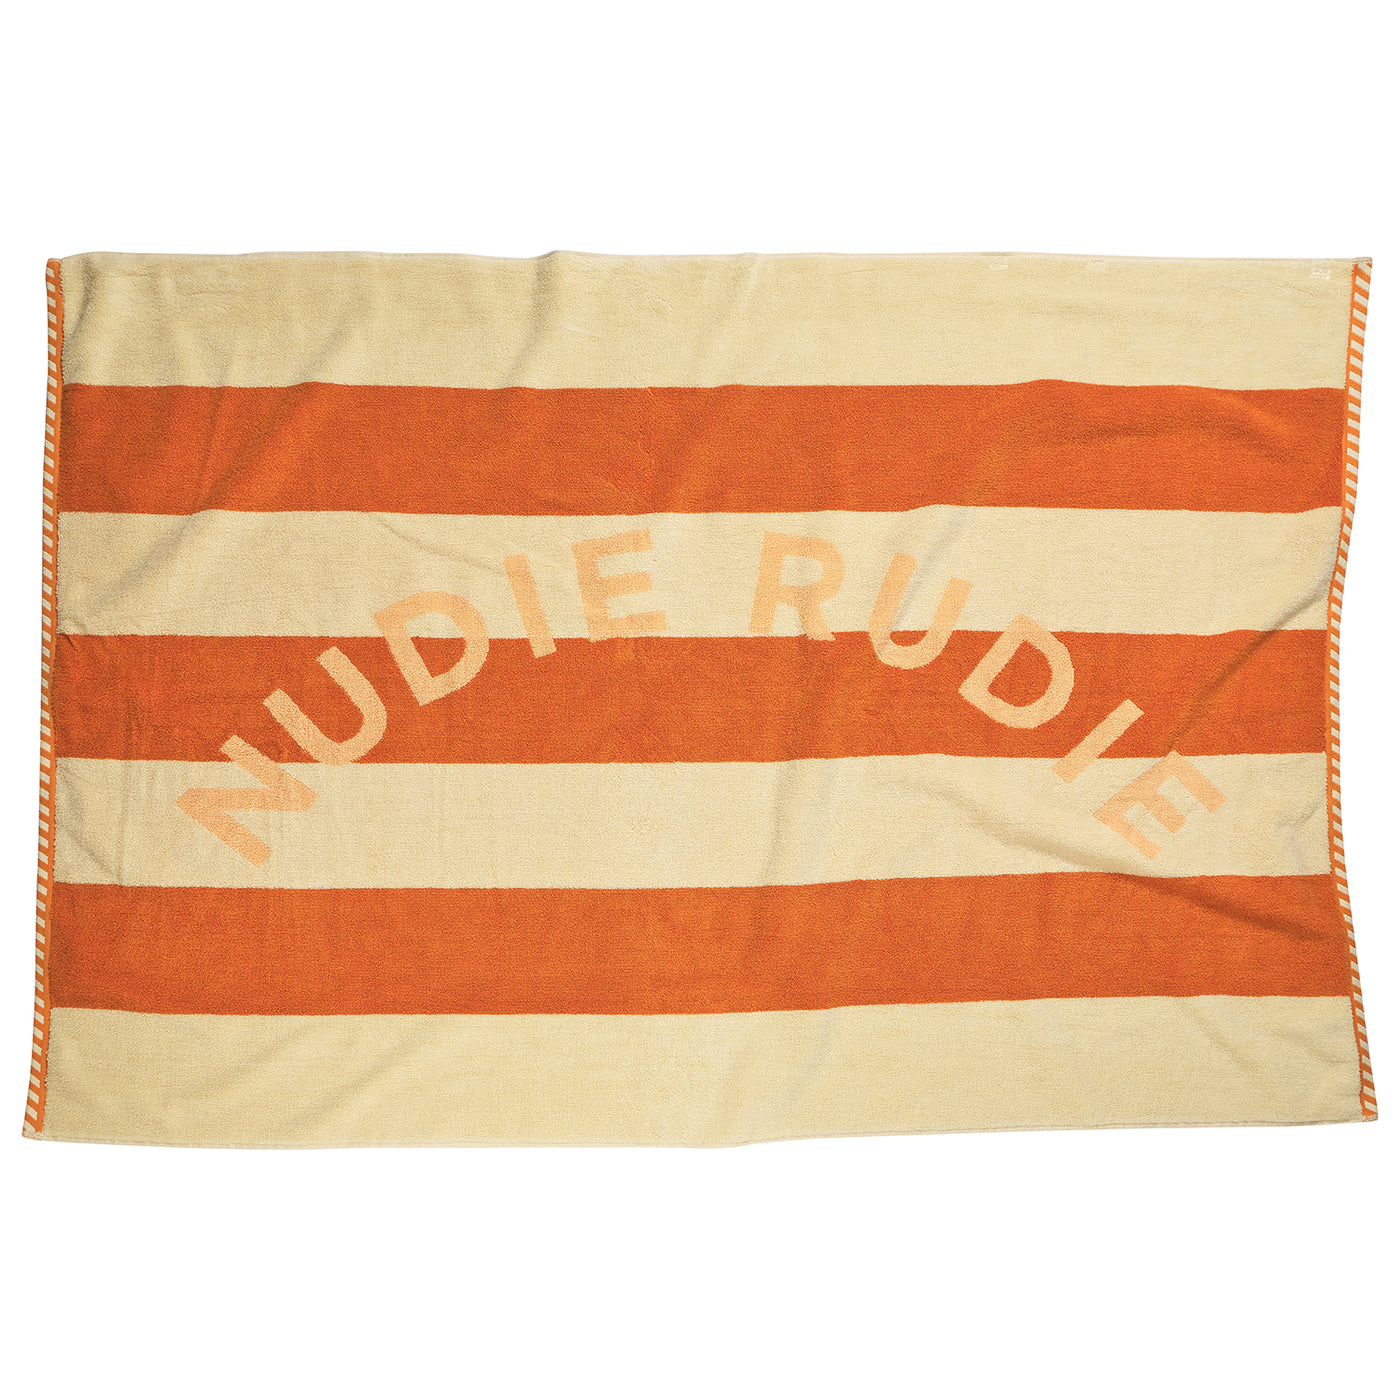 Didcot Nudie Towel - Persimmon Default Title